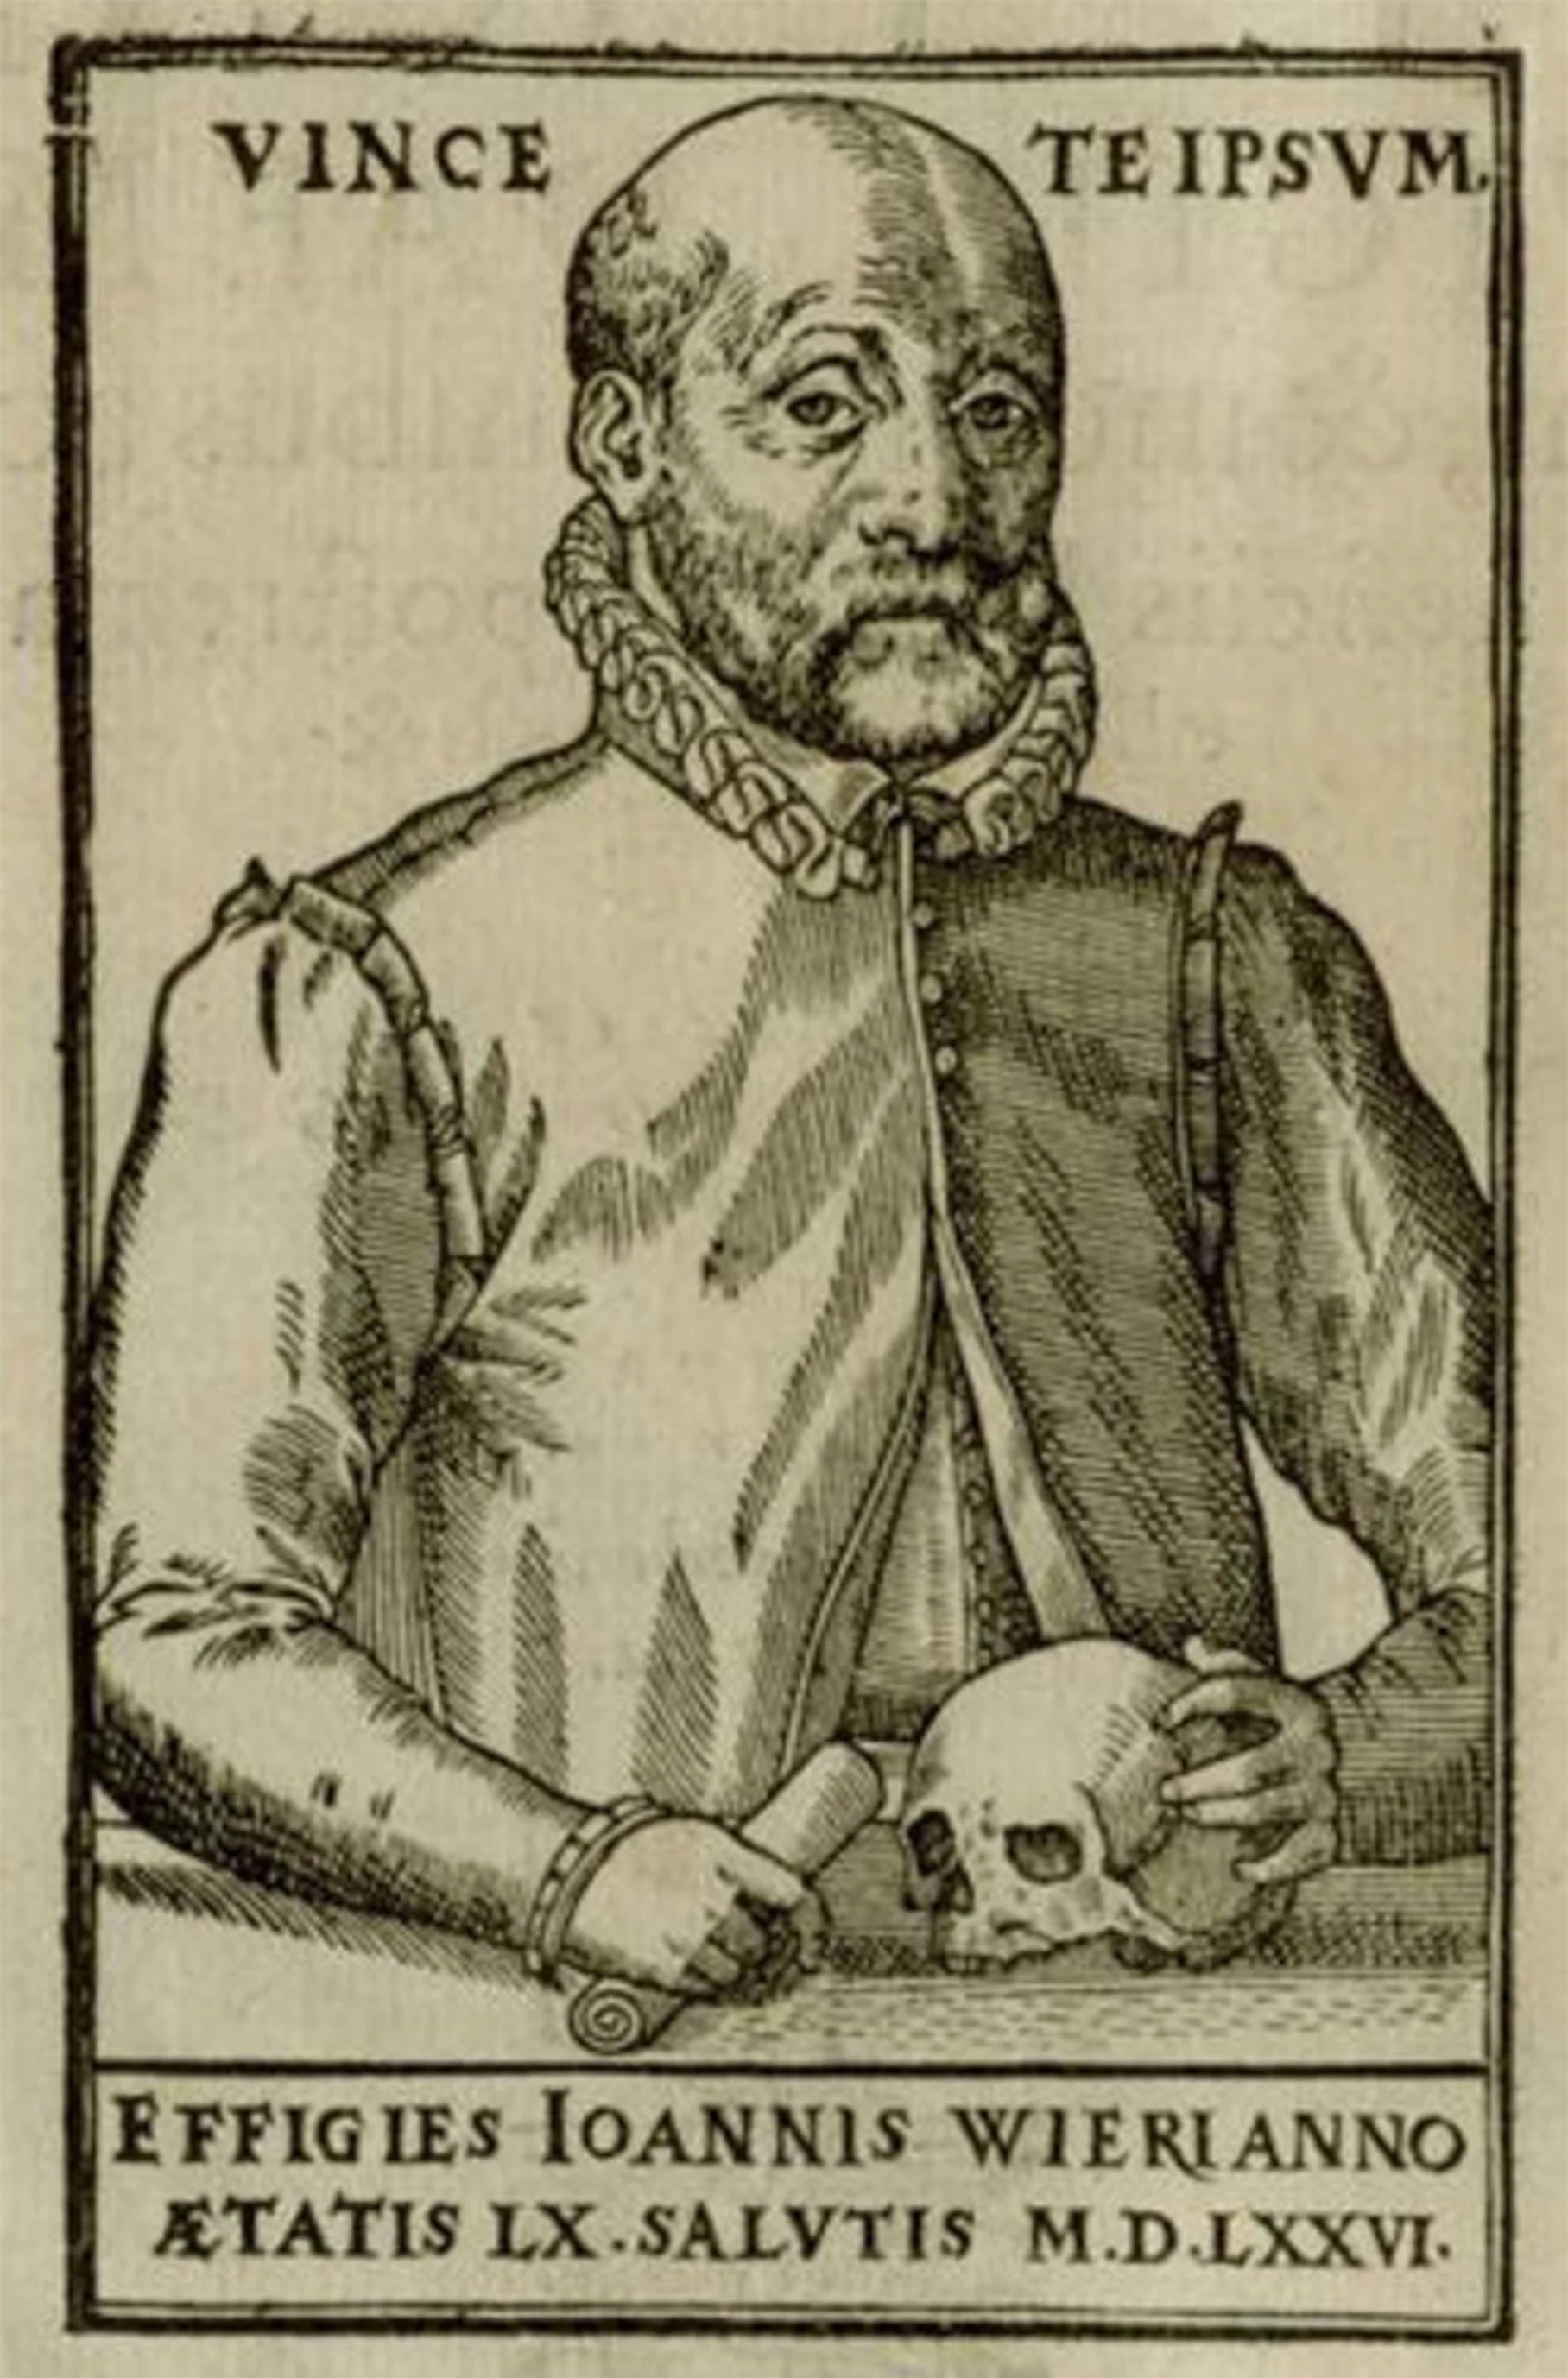 Ảnh 1: Chân dung Johann Weyer được in khắc kẽm năm 1577. Minh họa được lấy từ cuốn sách “De lamiis liber” của ông bàn luận về phù thủy và về lối nhịn ăn sai lạc. Nguồn: Spektrum.